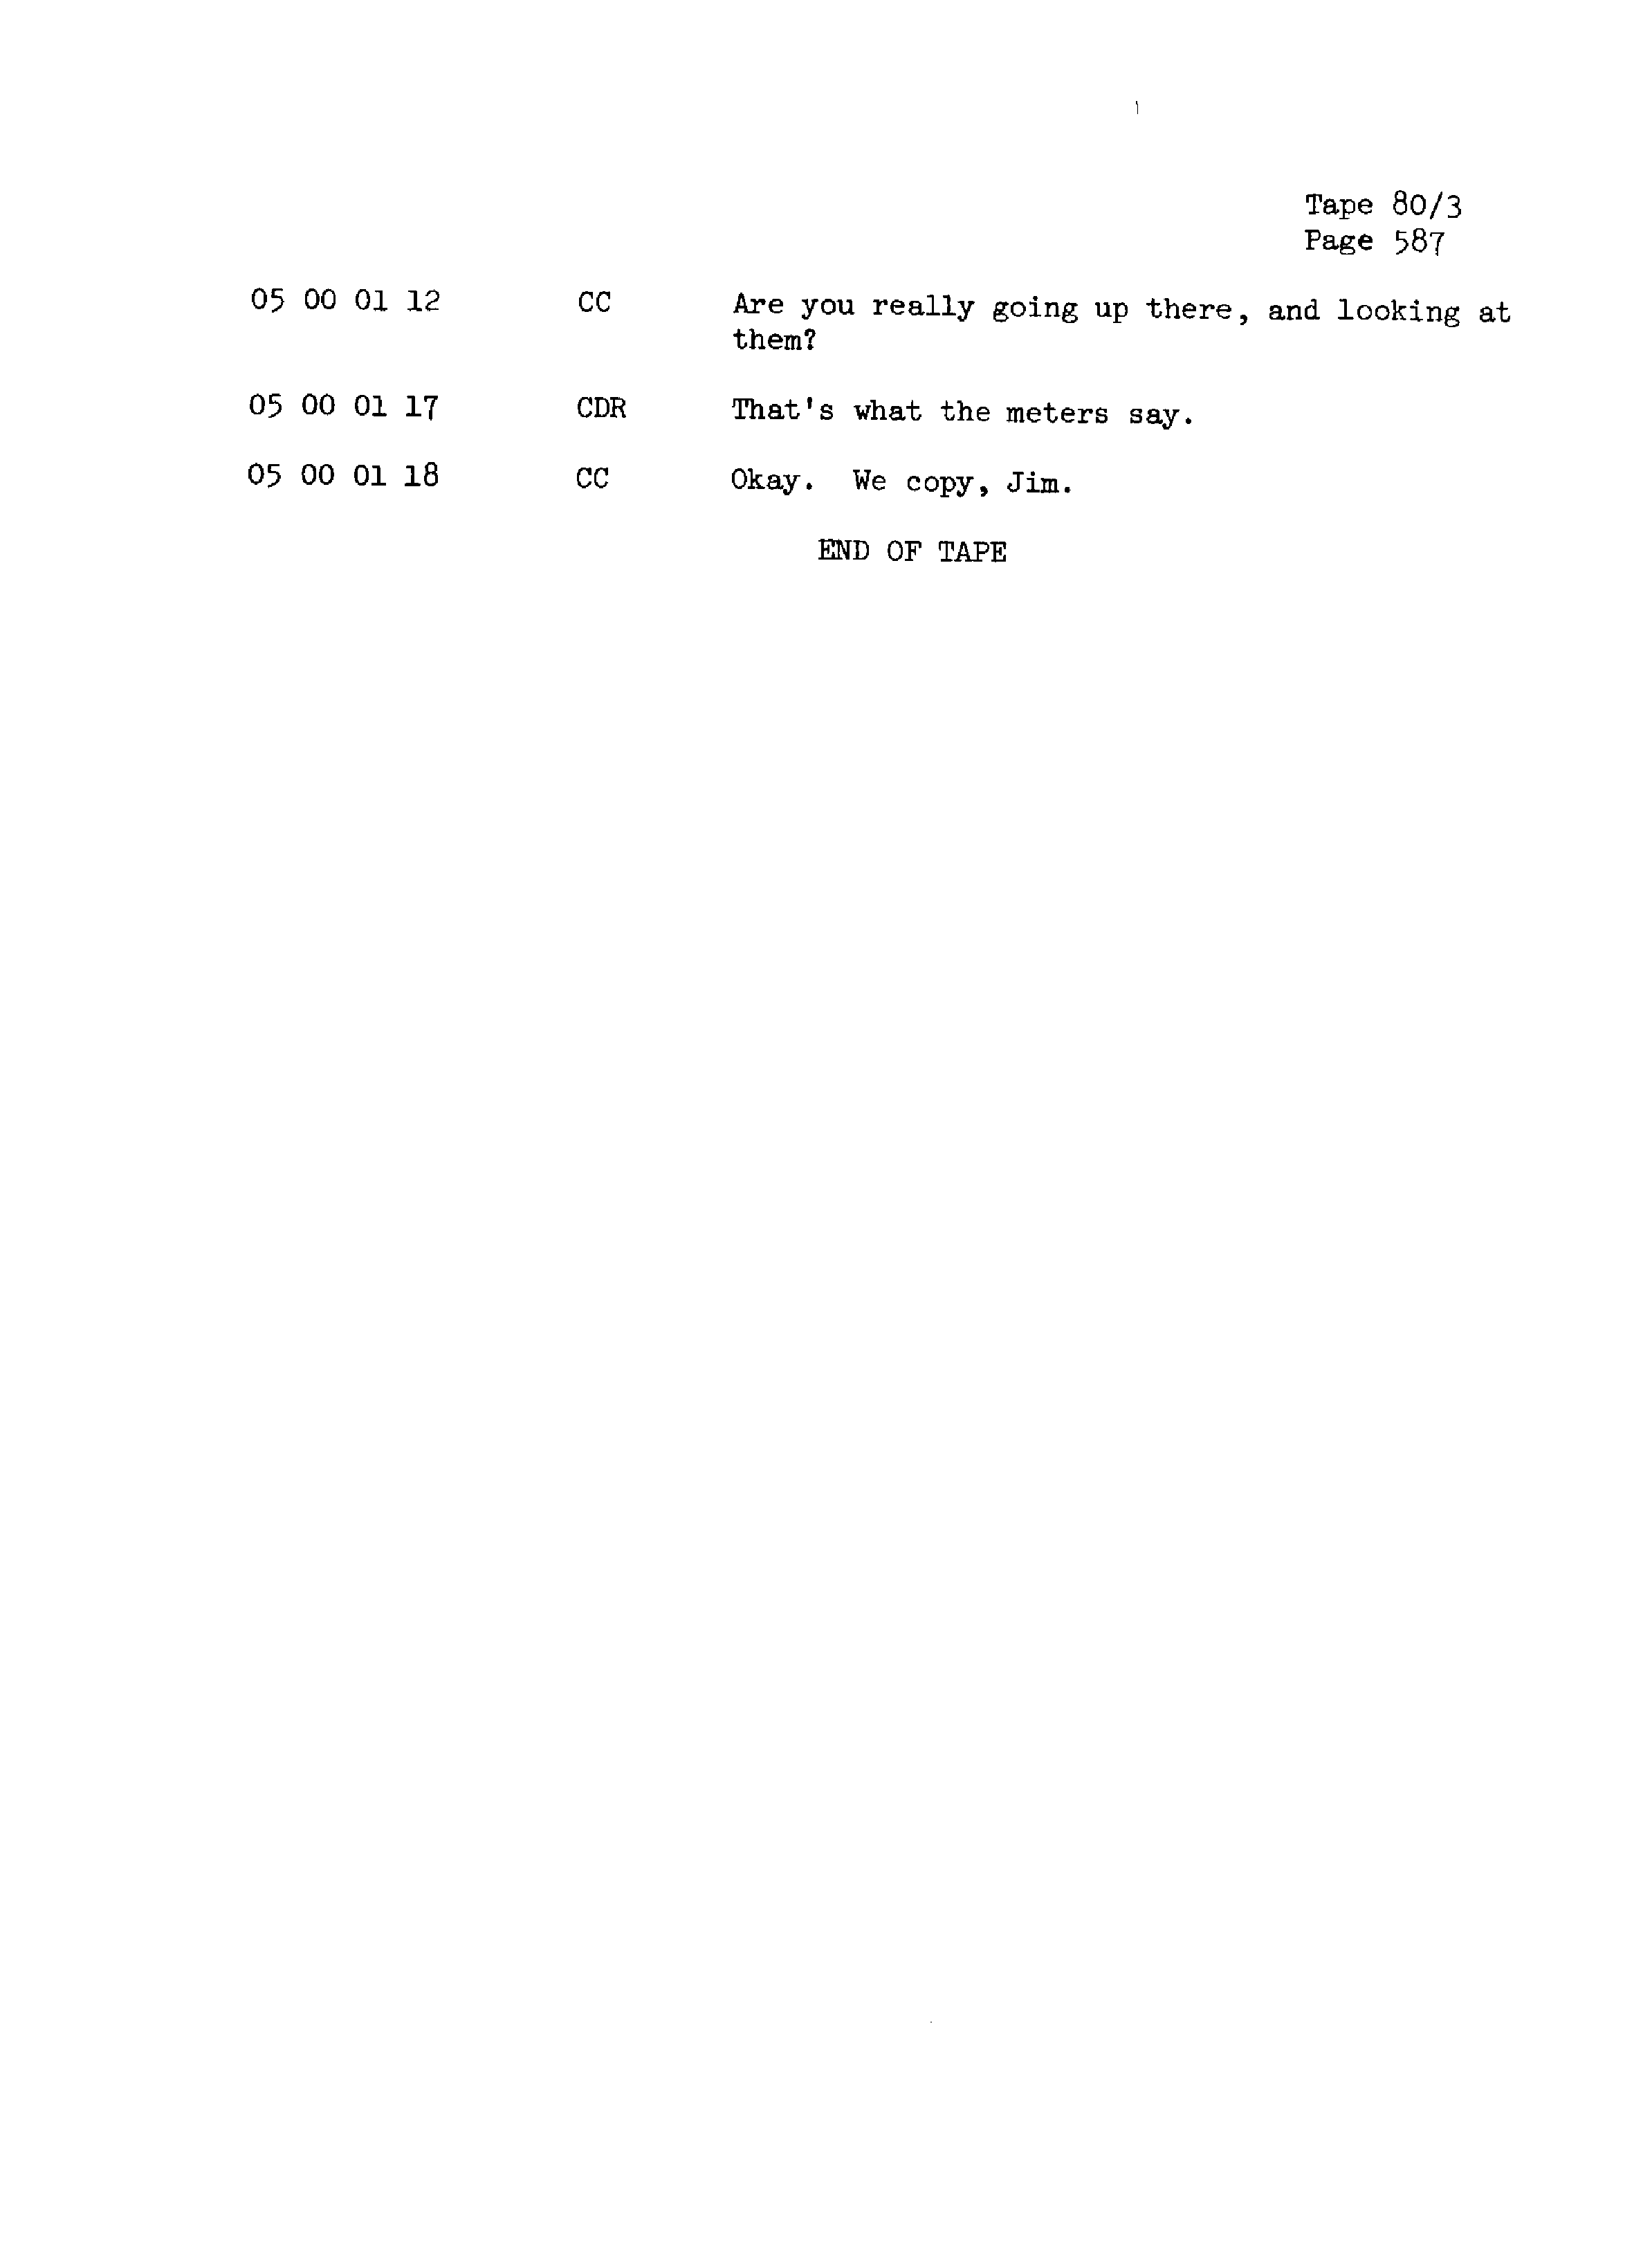 Page 594 of Apollo 13’s original transcript